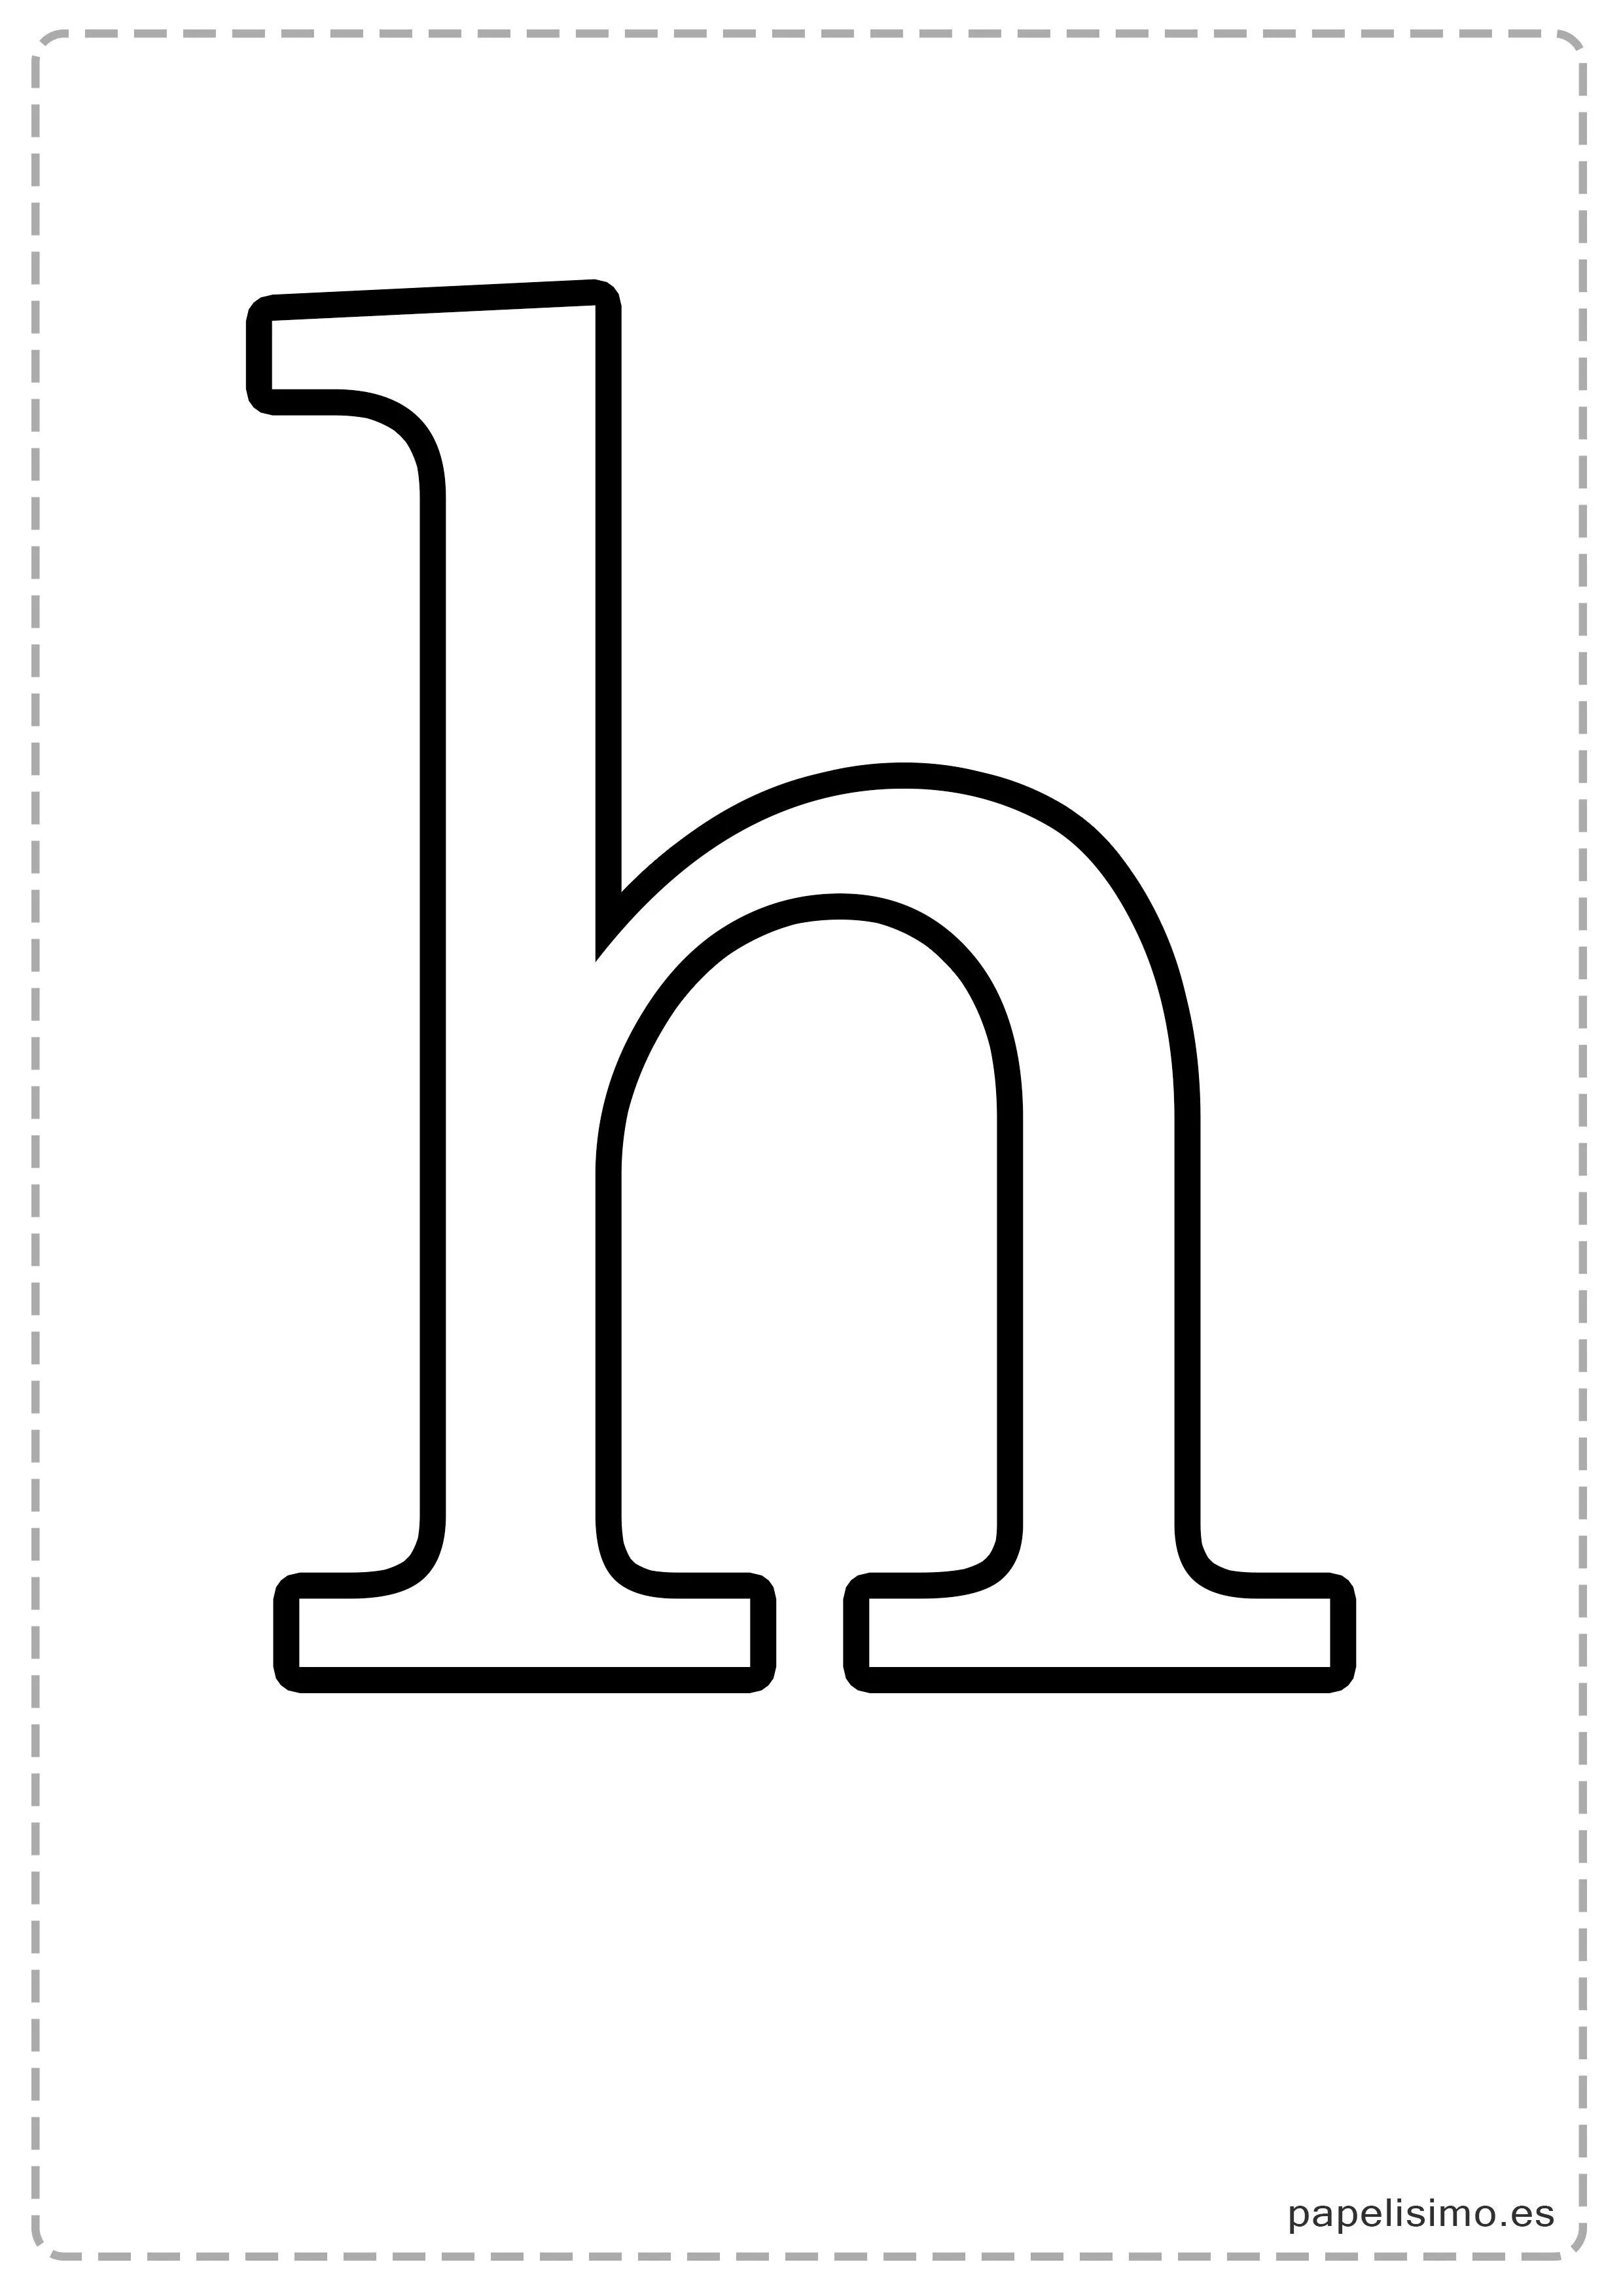 Letras grandes para imprimir (minúsculas) | Papelisimo